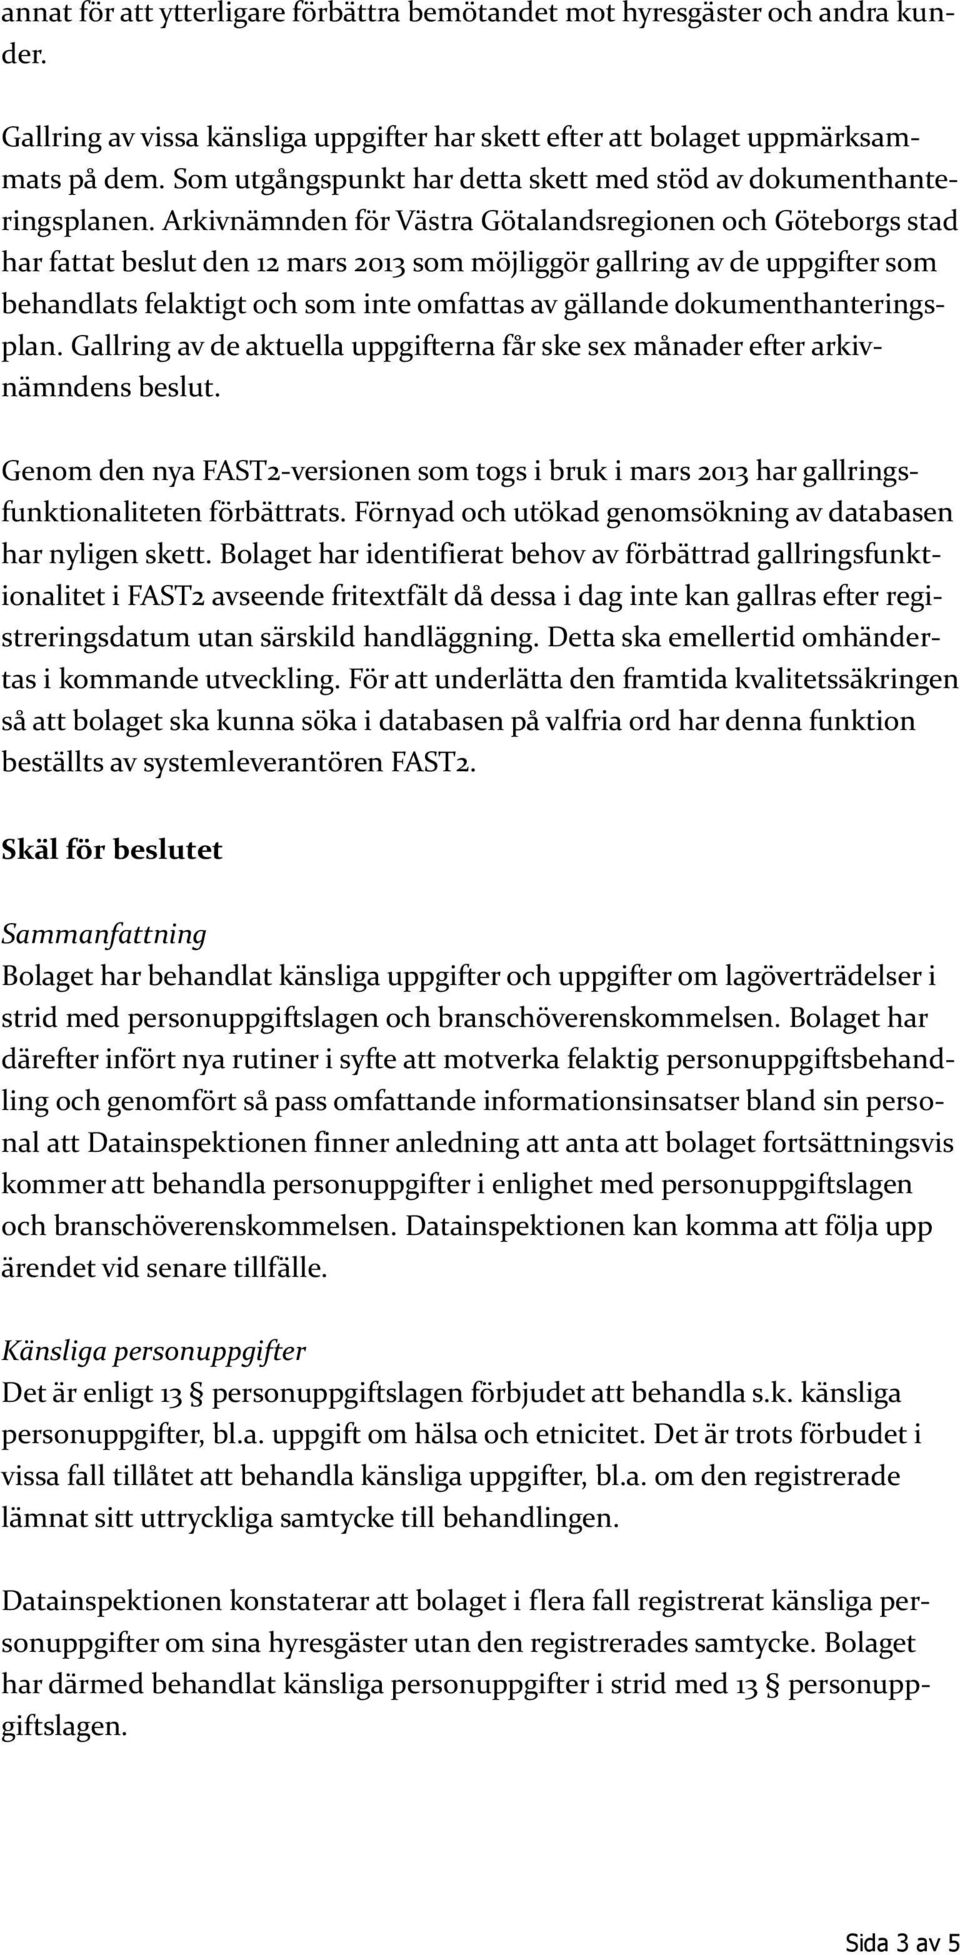 Arkivnämnden för Västra Götalandsregionen och Göteborgs stad har fattat beslut den 12 mars 2013 som möjliggör gallring av de uppgifter som behandlats felaktigt och som inte omfattas av gällande